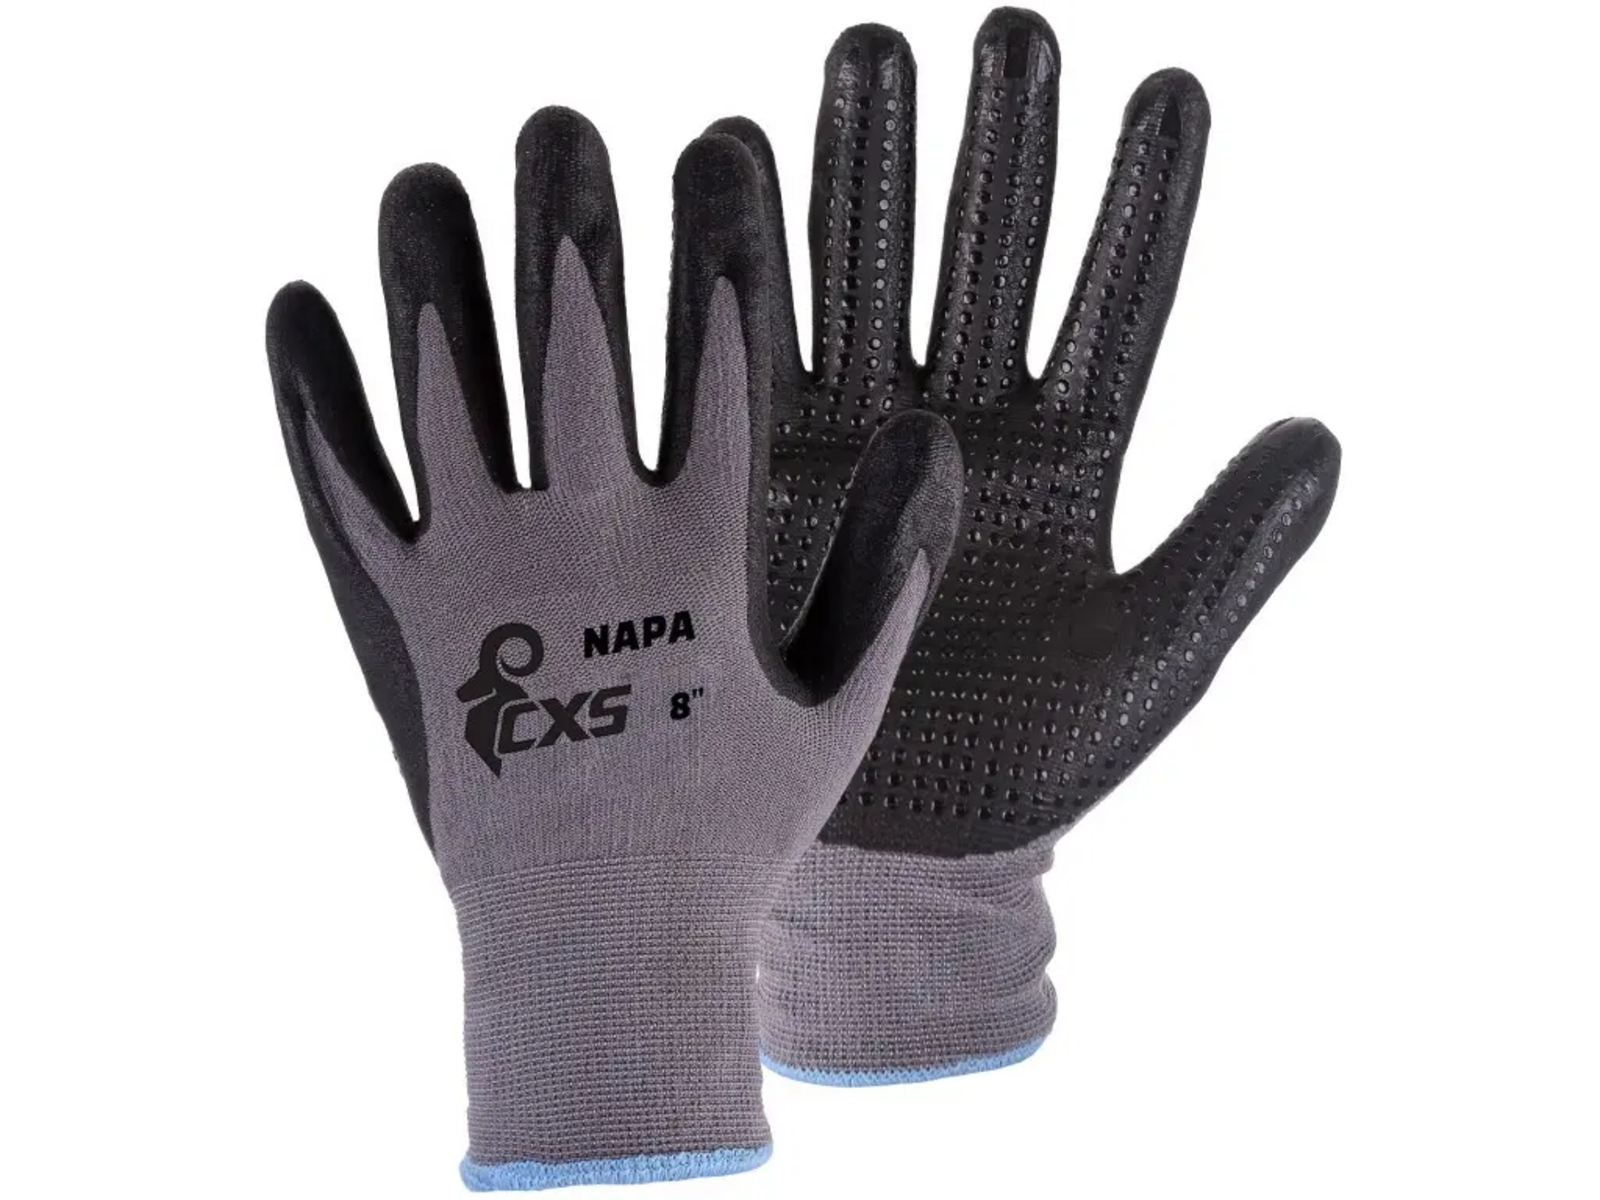 Povrstvené rukavice CXS Napa - veľkosť: 8/M, farba: sivá/čierna